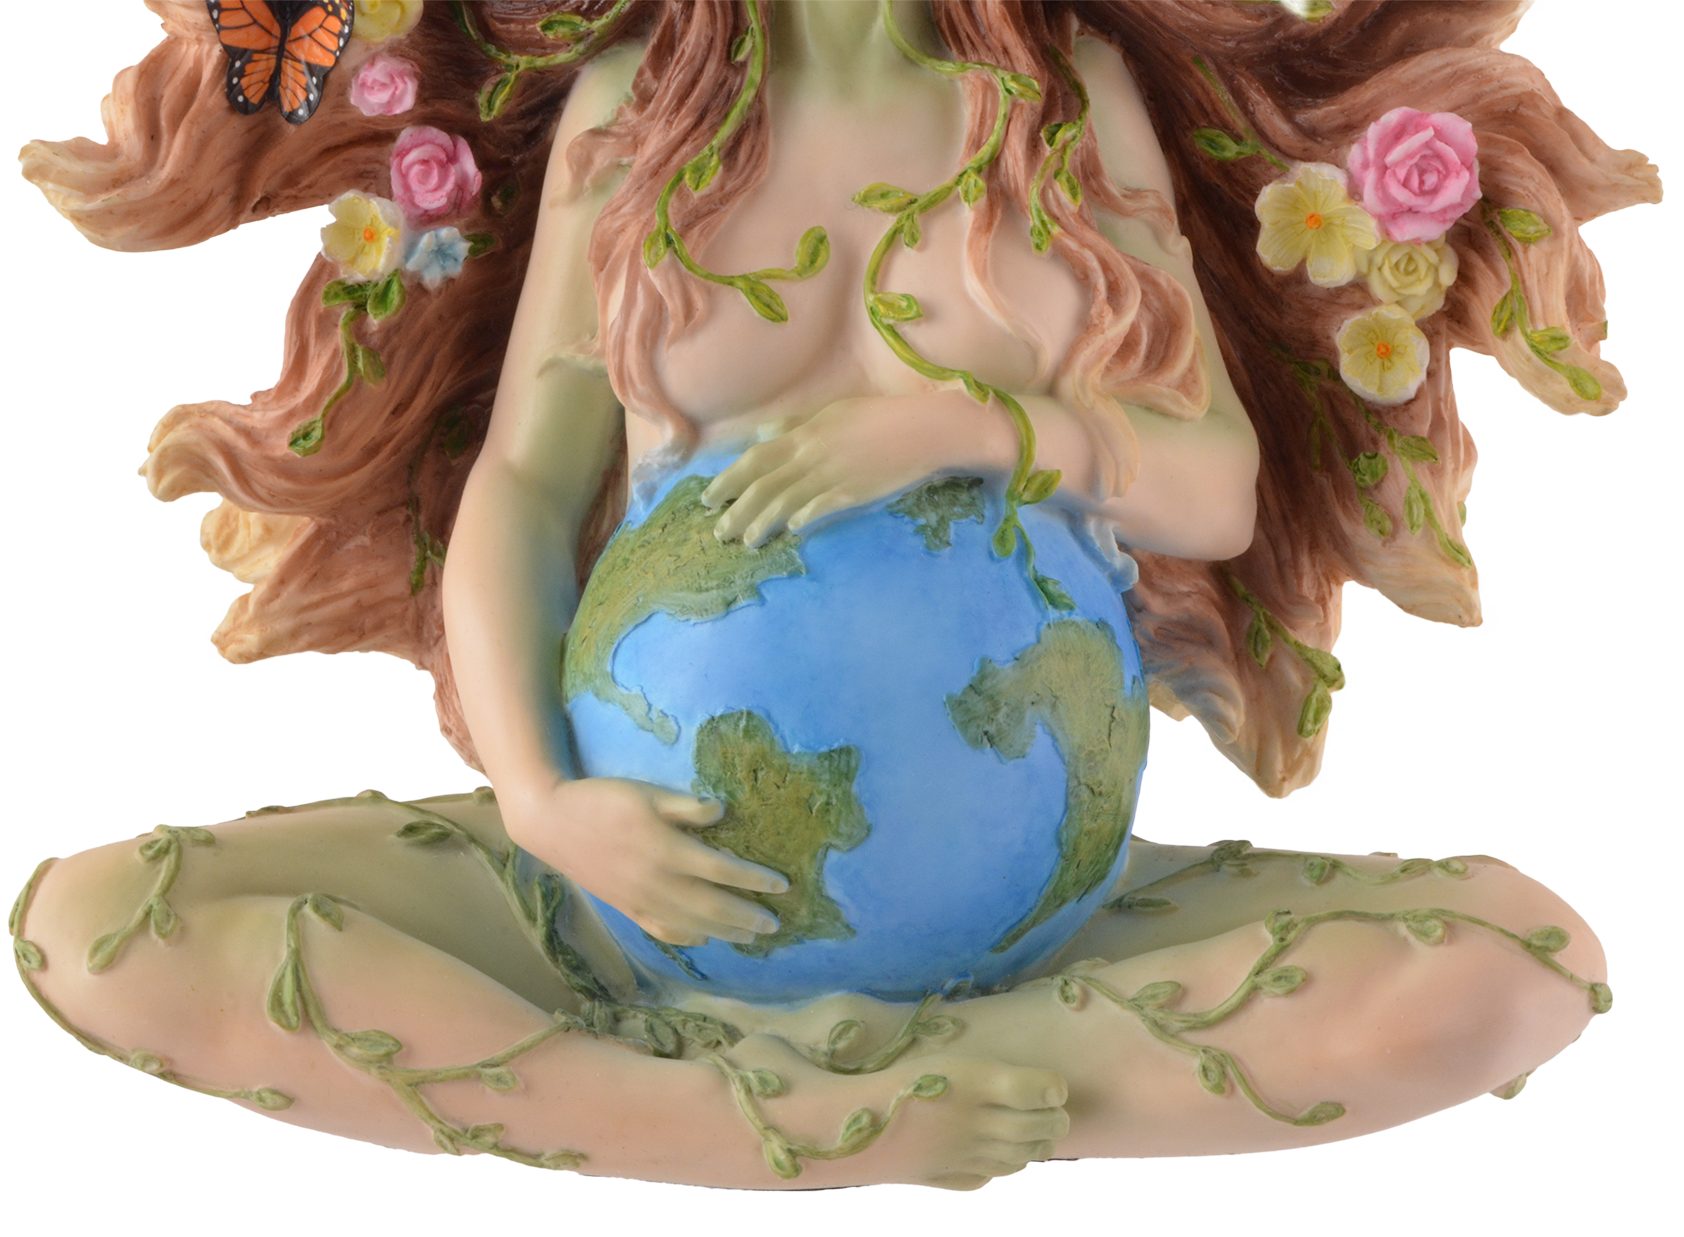 Gmbh ca. direct Kunststein, - sitzend von Erdmutter coloriert Veronese, coloriert, Veronese, Gaia by by Vogler 18x9x18cm Hand LxBxH Dekofigur